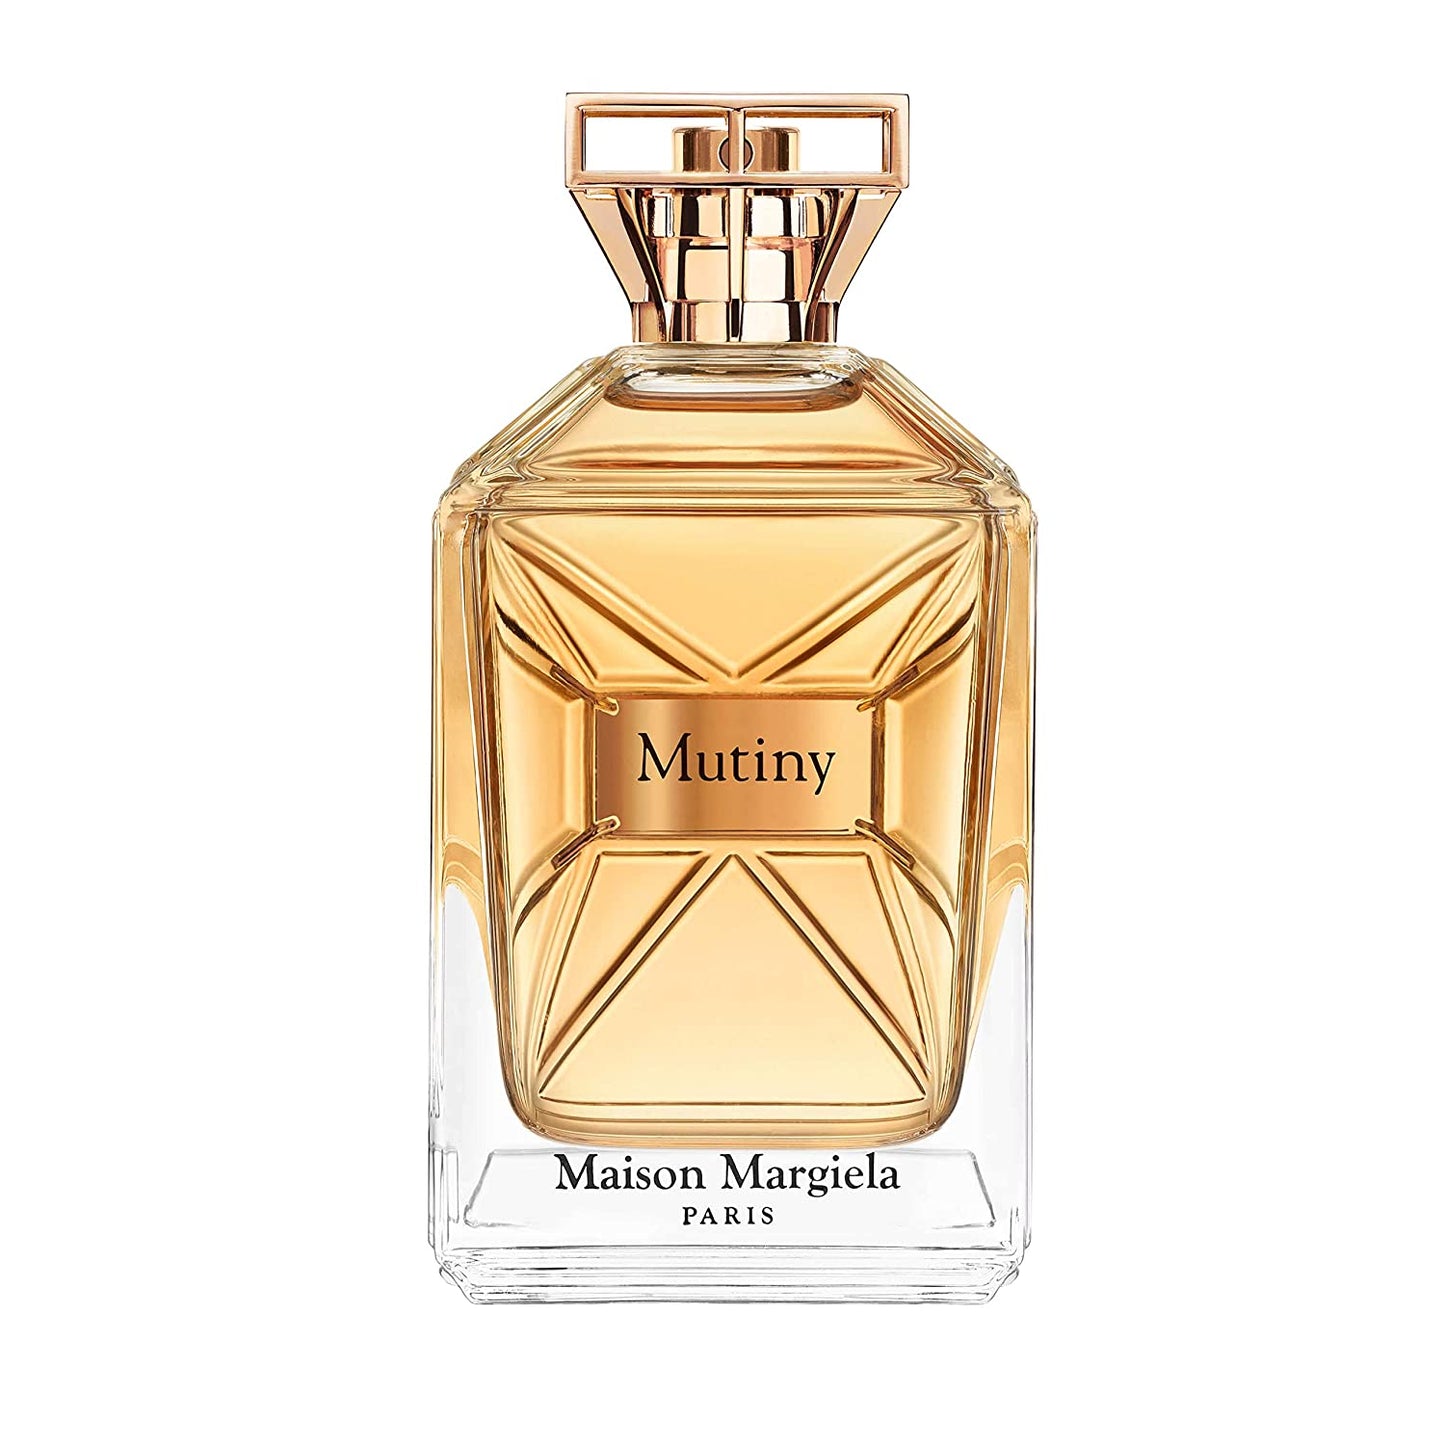 Maison Margiela Mutiny Eau de Parfum 50 ml / 1.6 oz